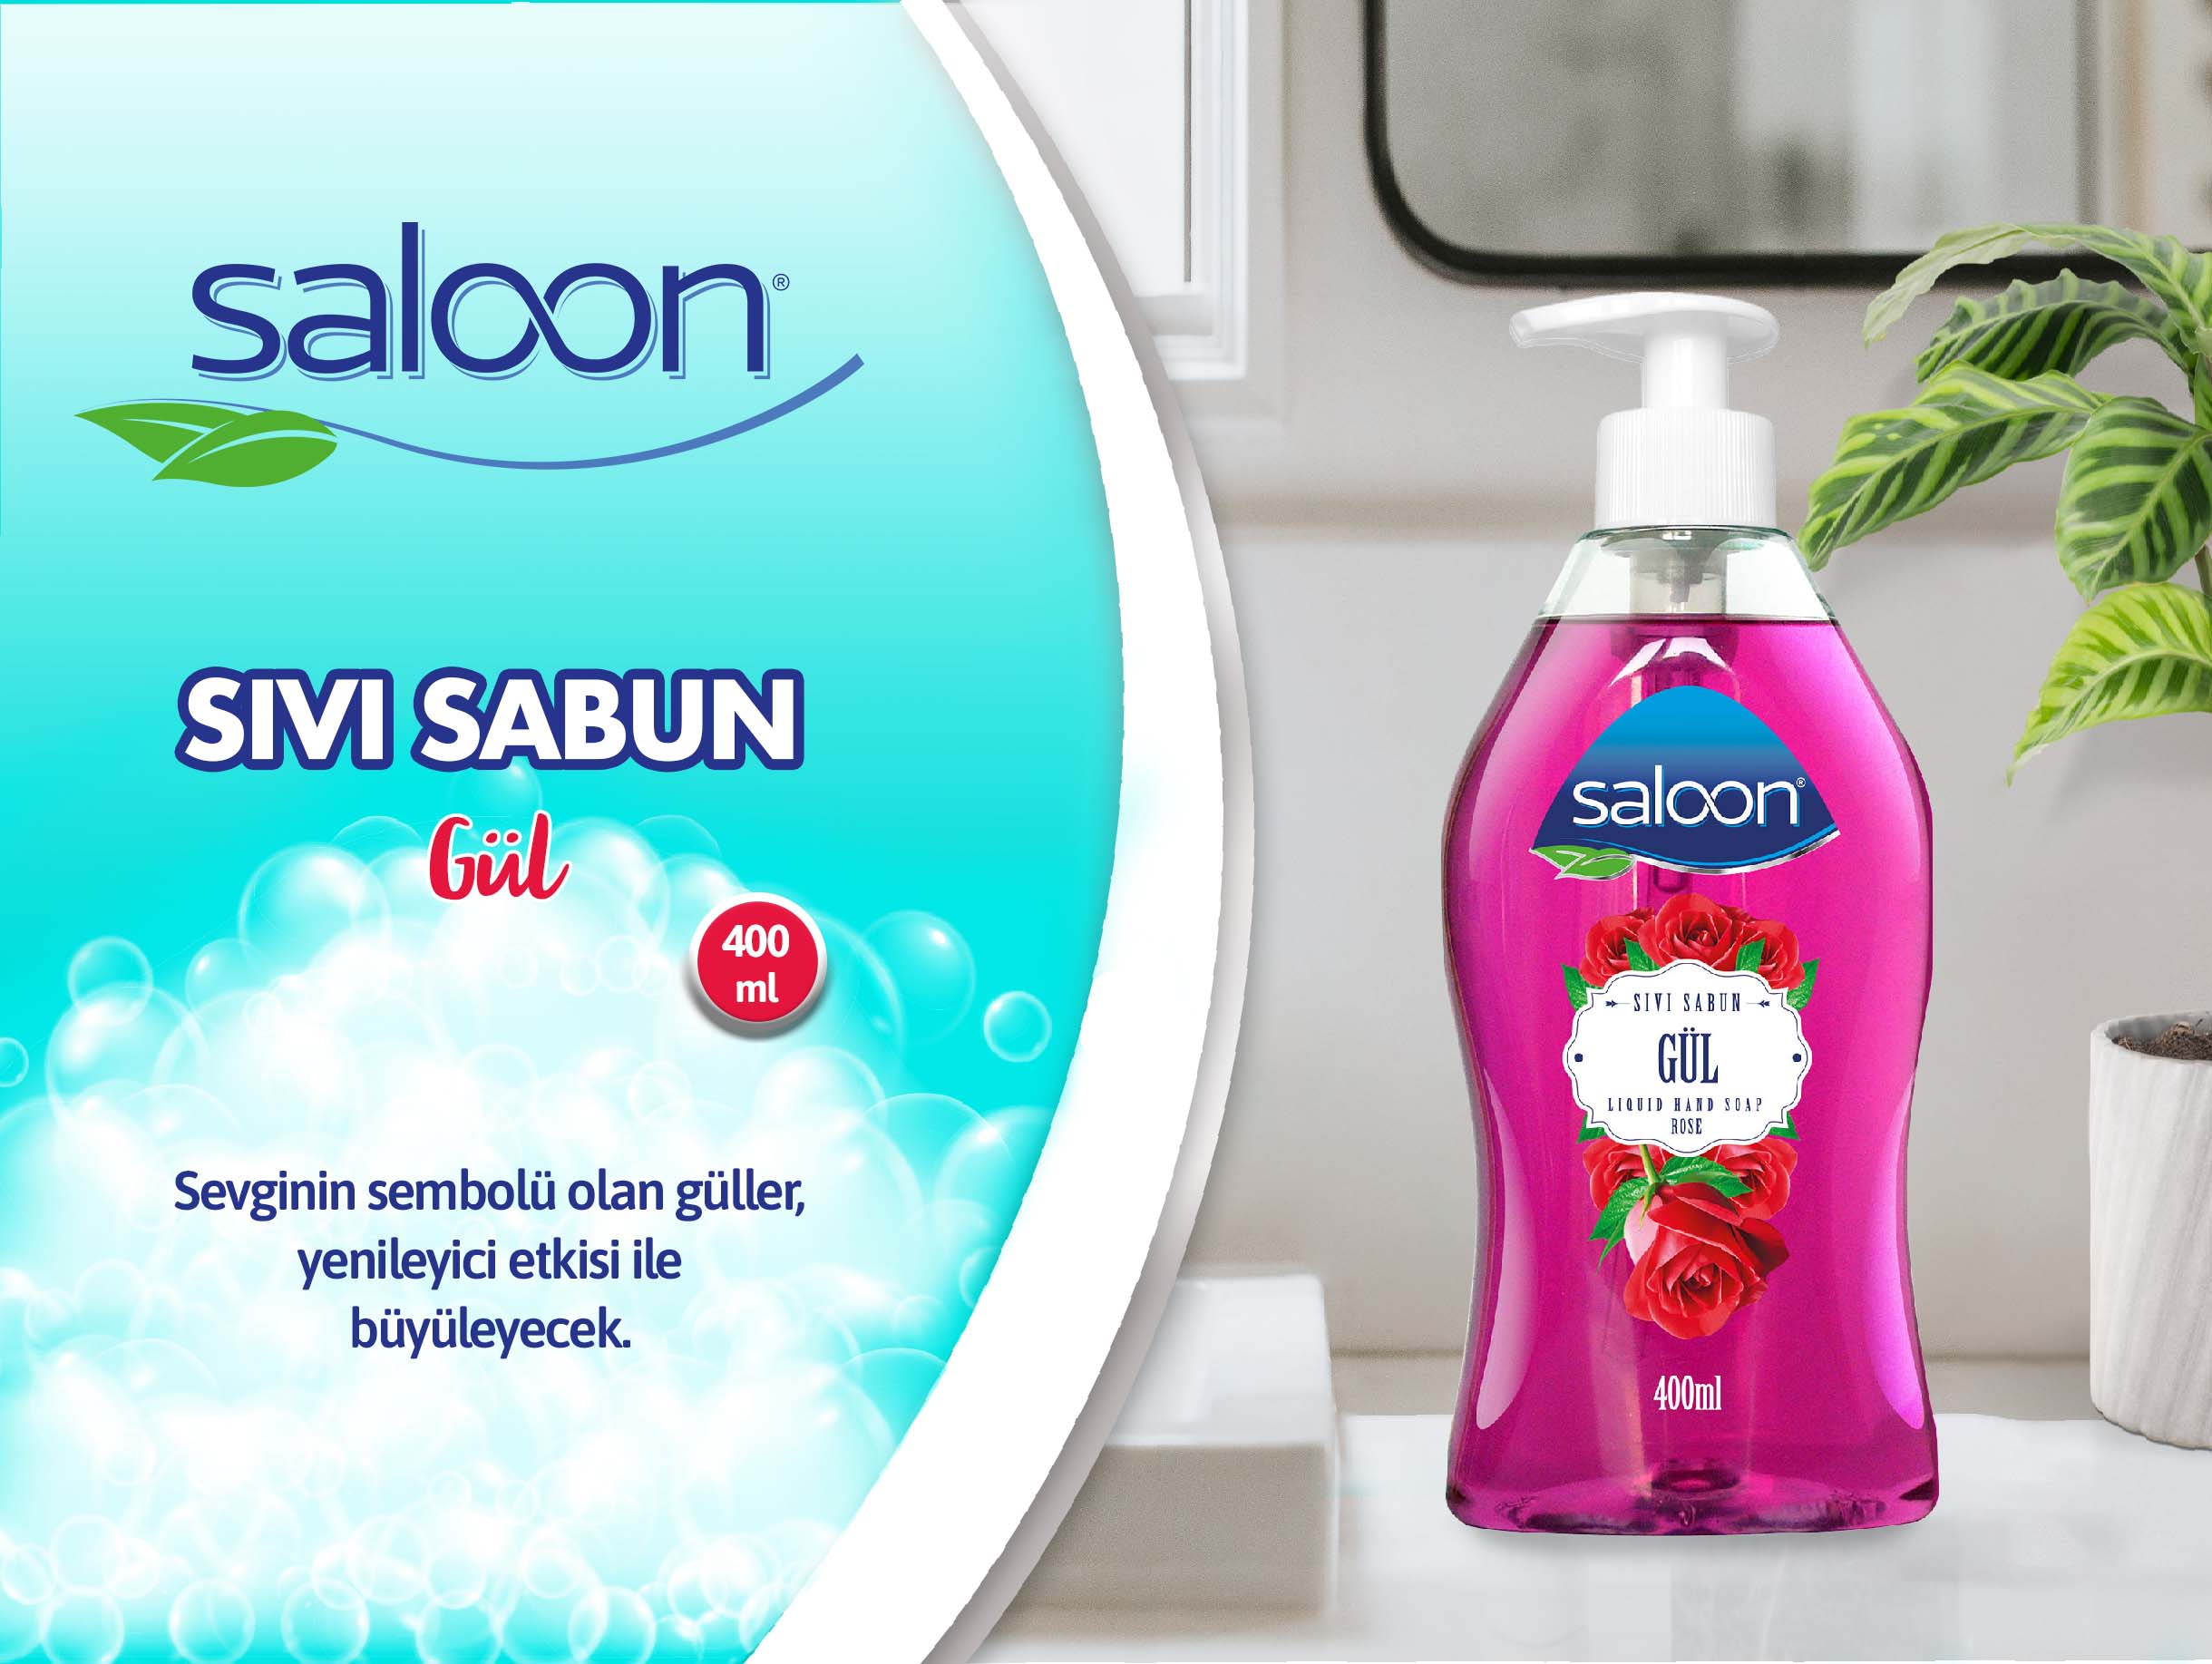 Saloon sıvı Sabun gül 400 ml.jpg (241 KB)